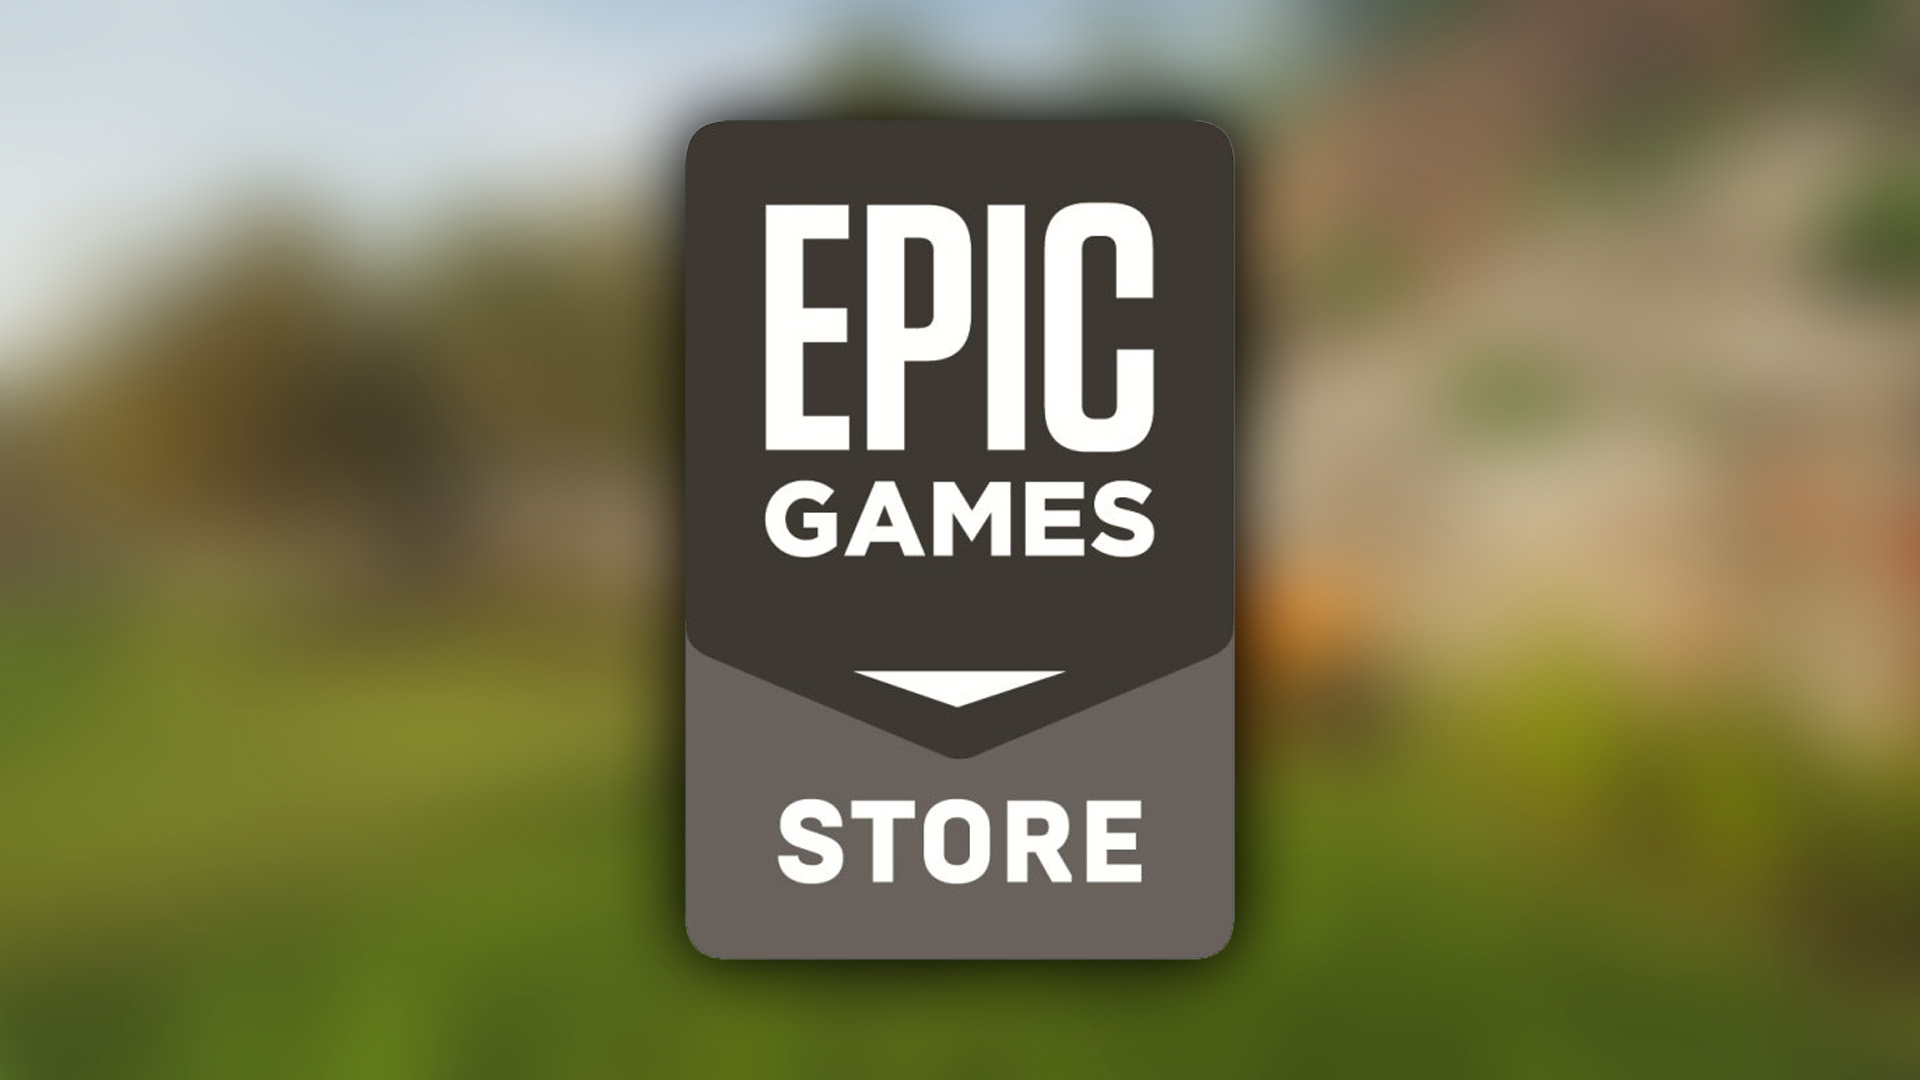 Gra za darmo w Epic Games Store. Odbierzcie kolejny tytuł